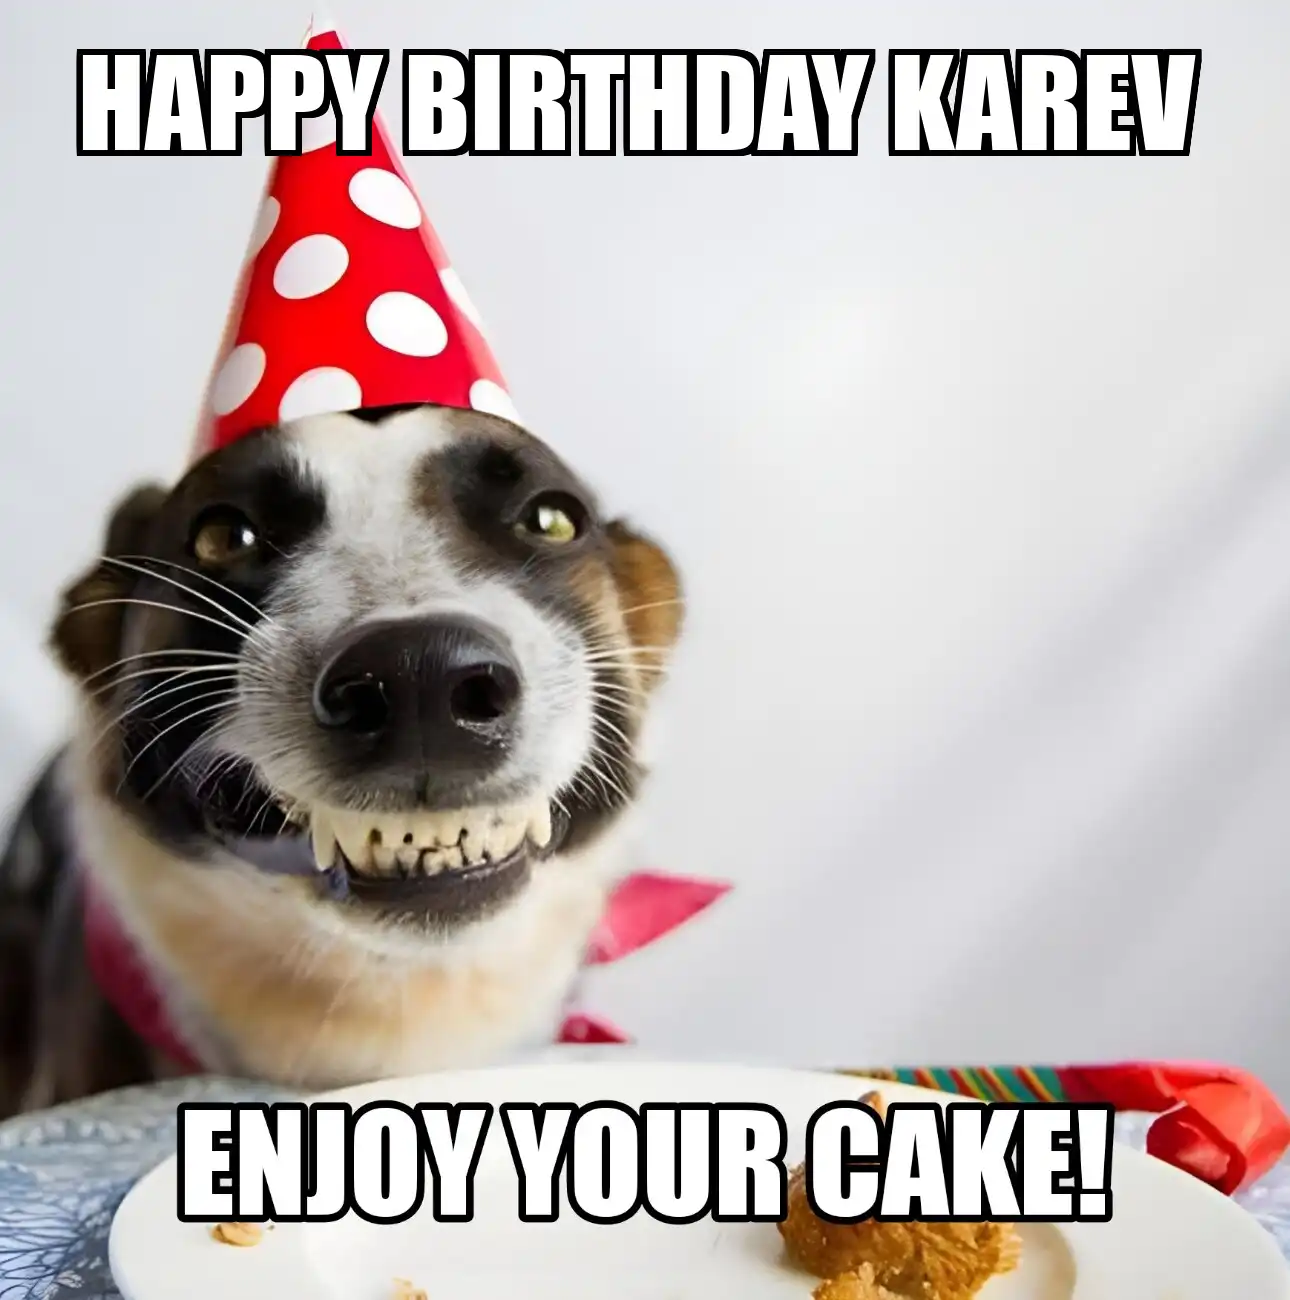 Happy Birthday Karev Enjoy Your Cake Dog Meme